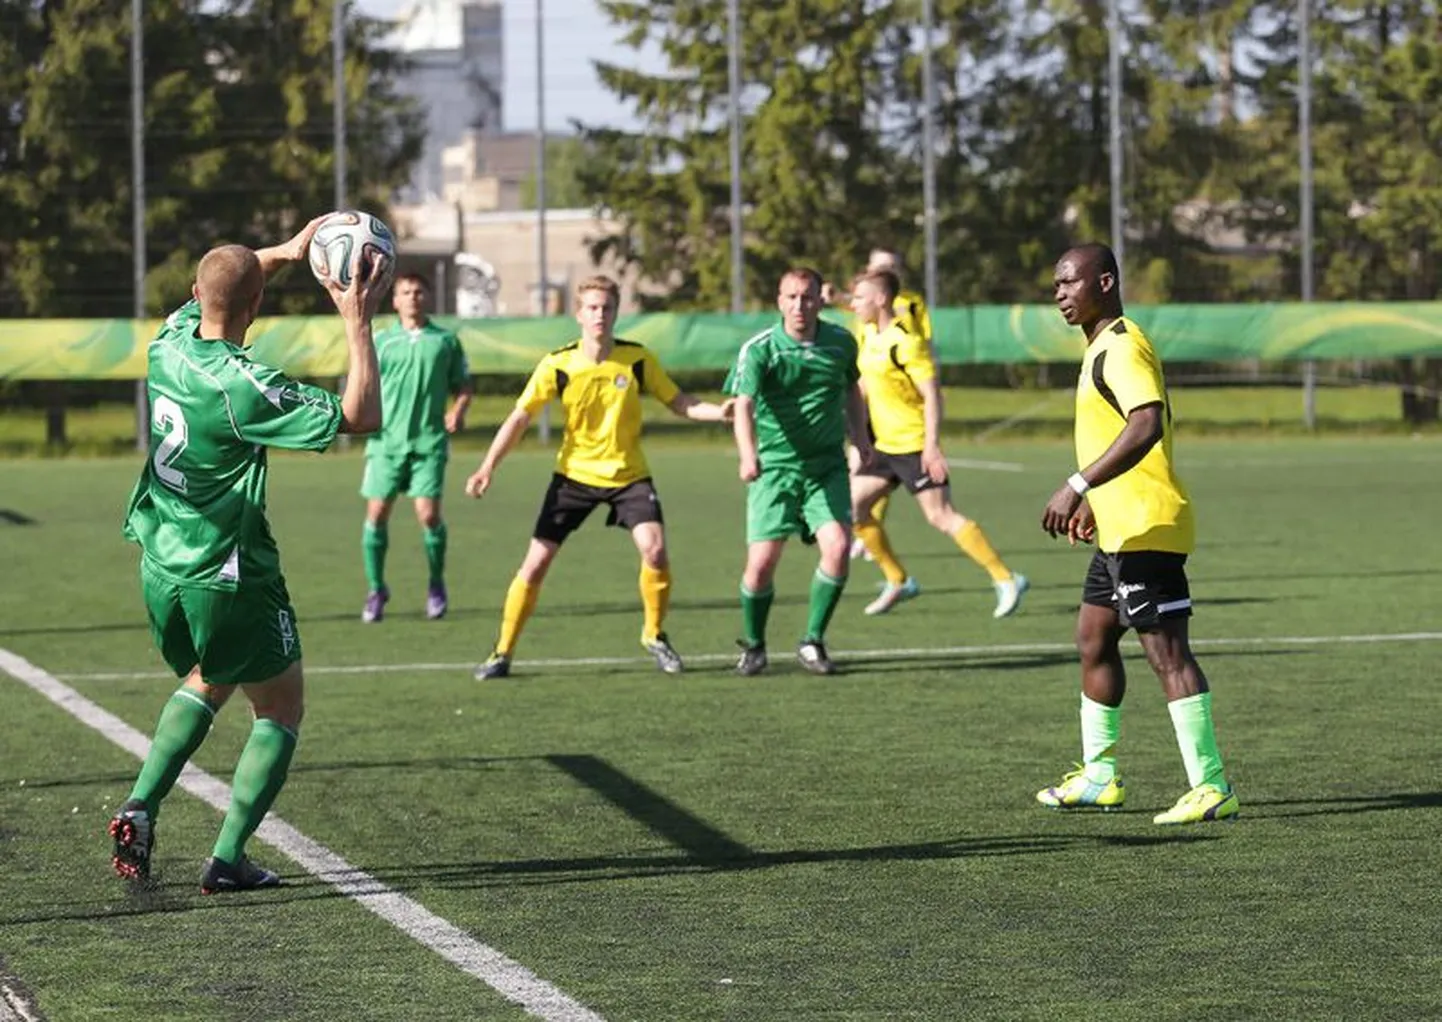 Moldova jalgpallurid alistasid Rakvere jalgpalliklubi Tarvas duubelvõistkonna (kollases) 2:0.